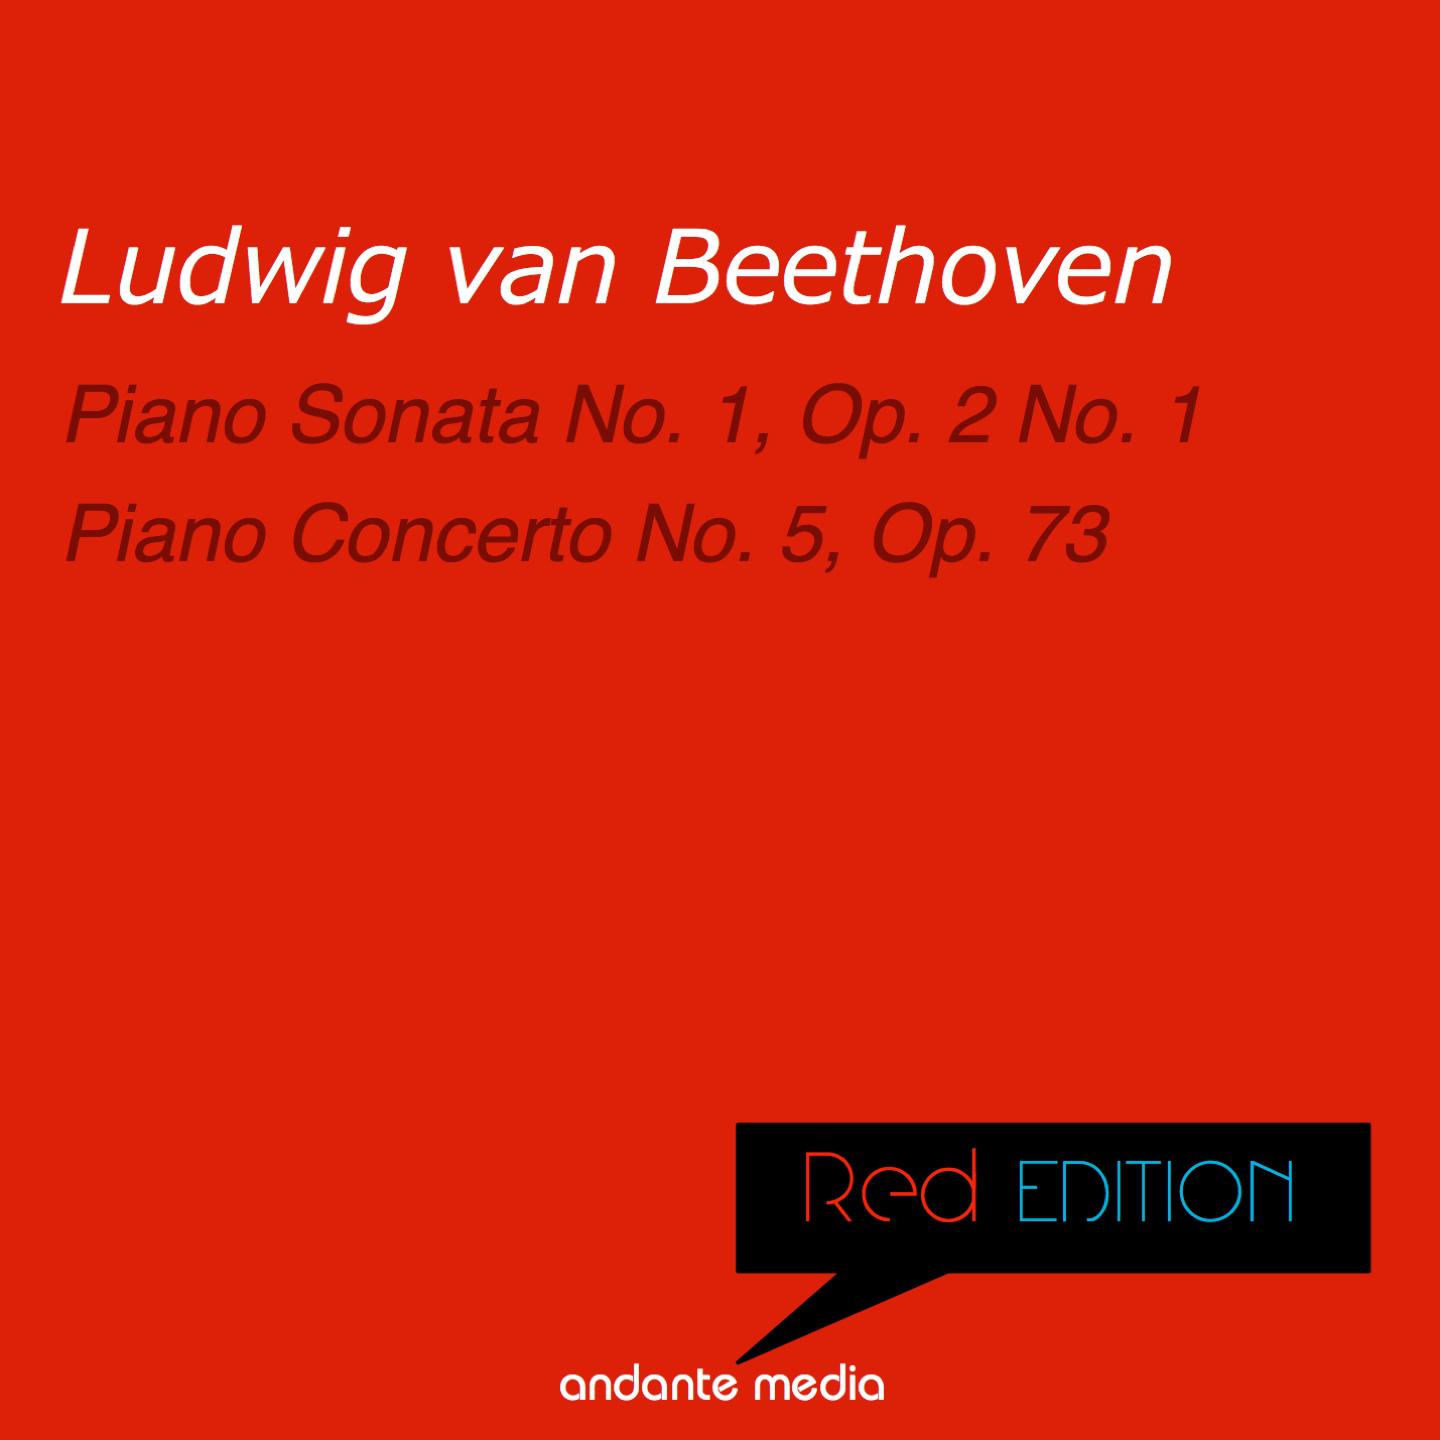 Red Edition - Beethoven: Piano Sonata No. 1, Op. 2 No. 1 & Piano Concerto No. 5, Op. 73